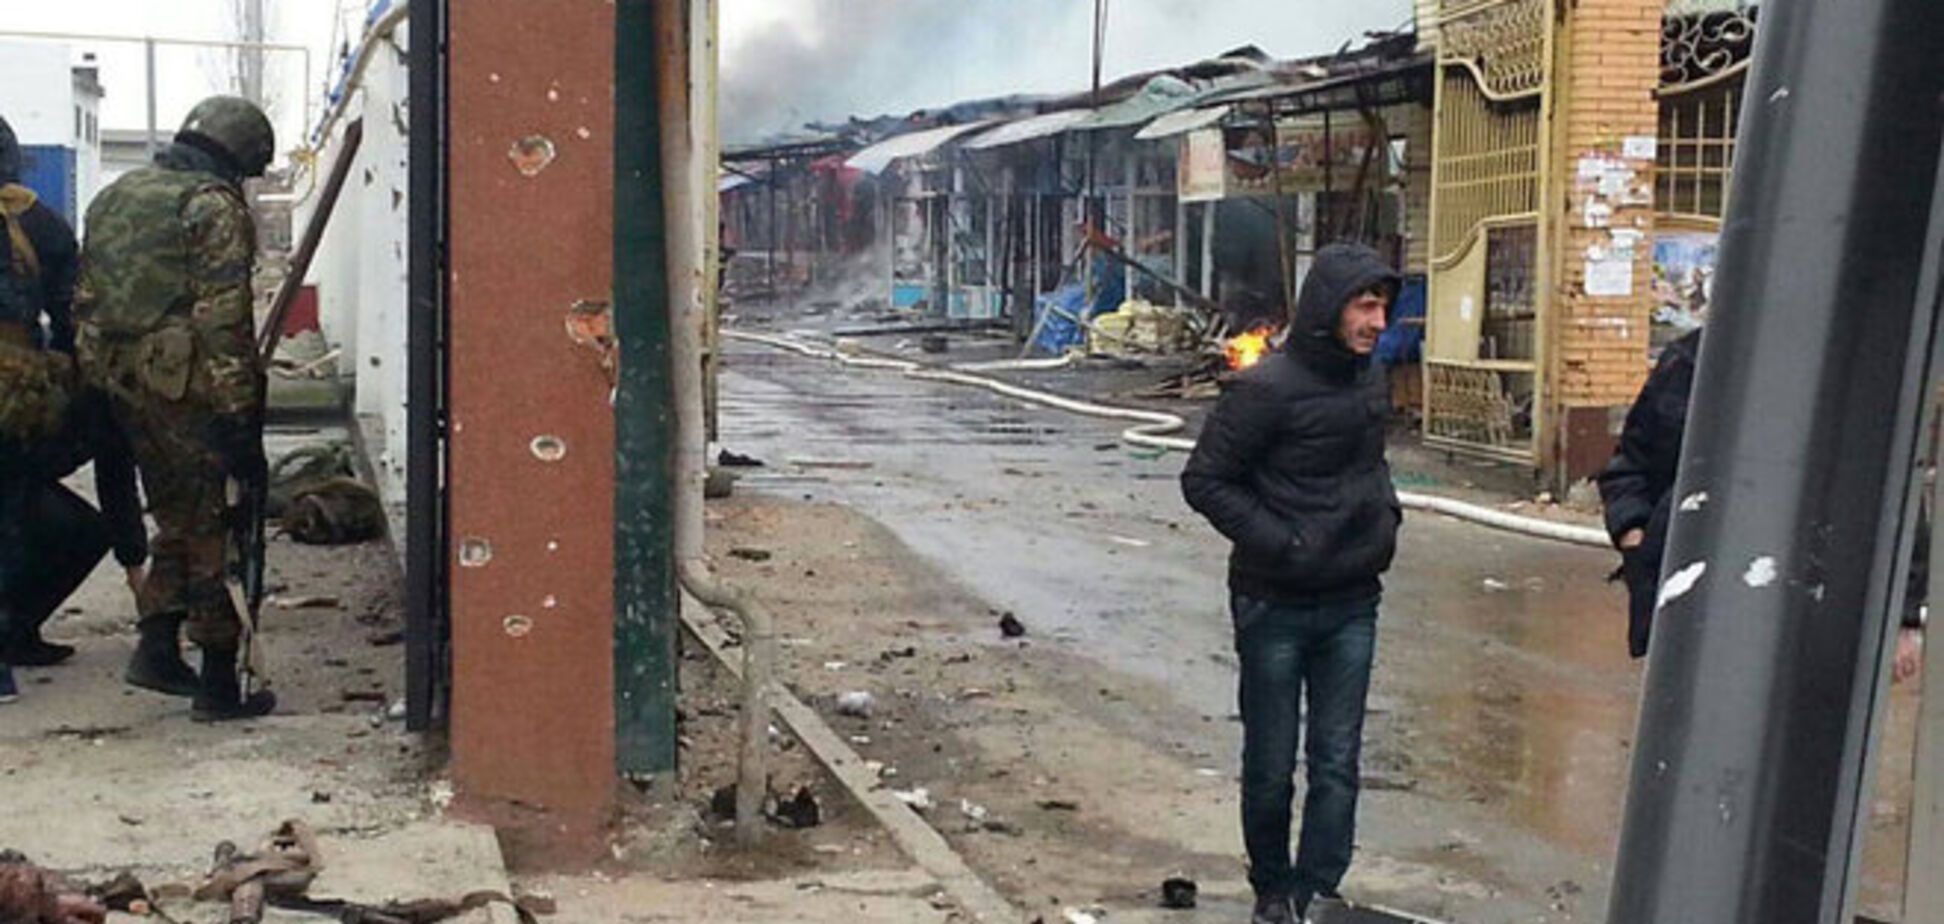 Теракт в Грозном в фотографиях и видео (18+)